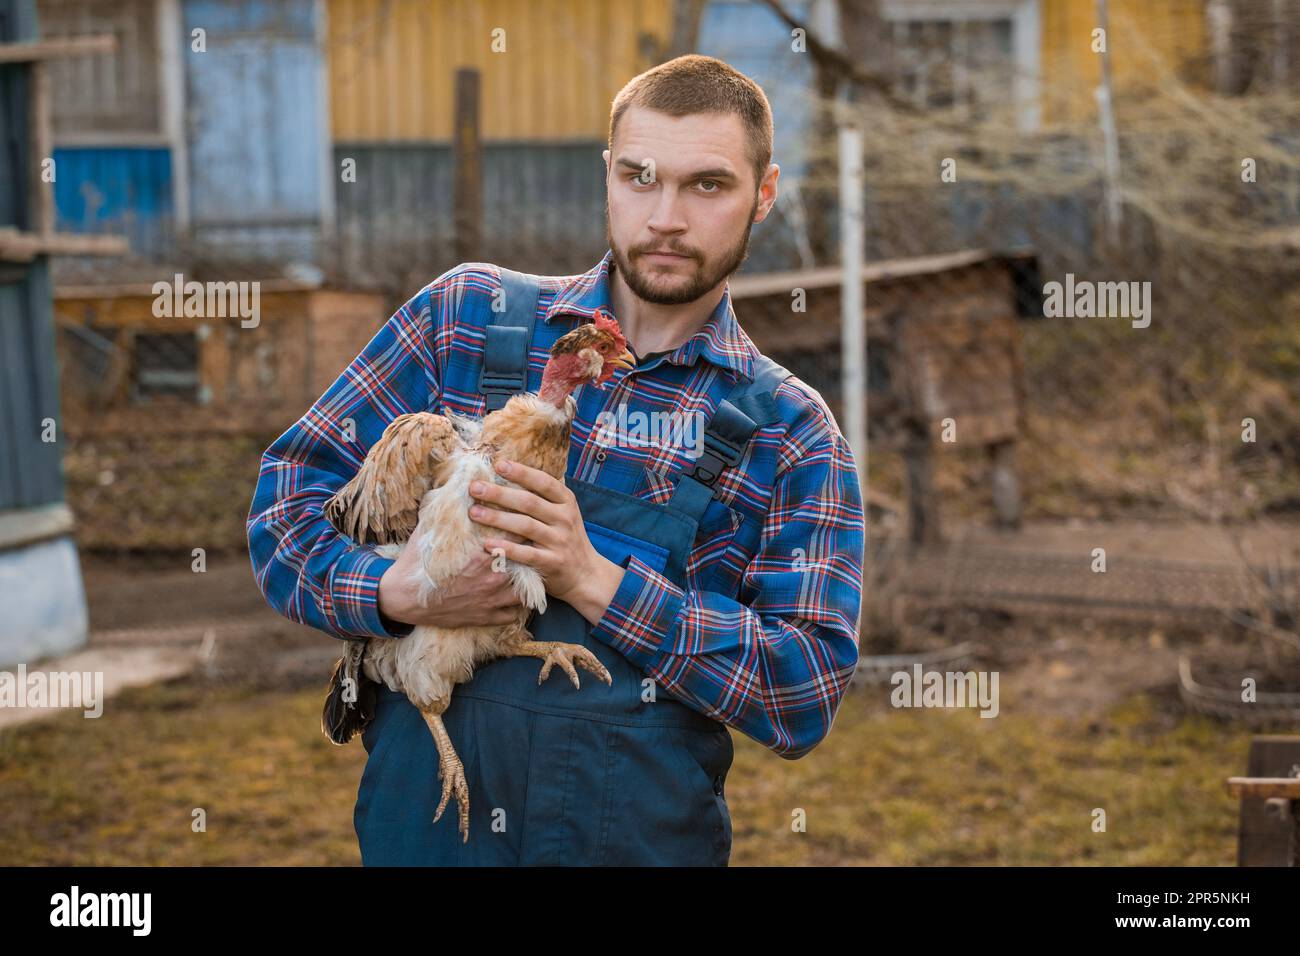 Un bel ritratto rurale caucasico europeo in campagna con barba, camicia e tute guarda la macchina fotografica con il collo bianco di pollo nel suo Foto Stock